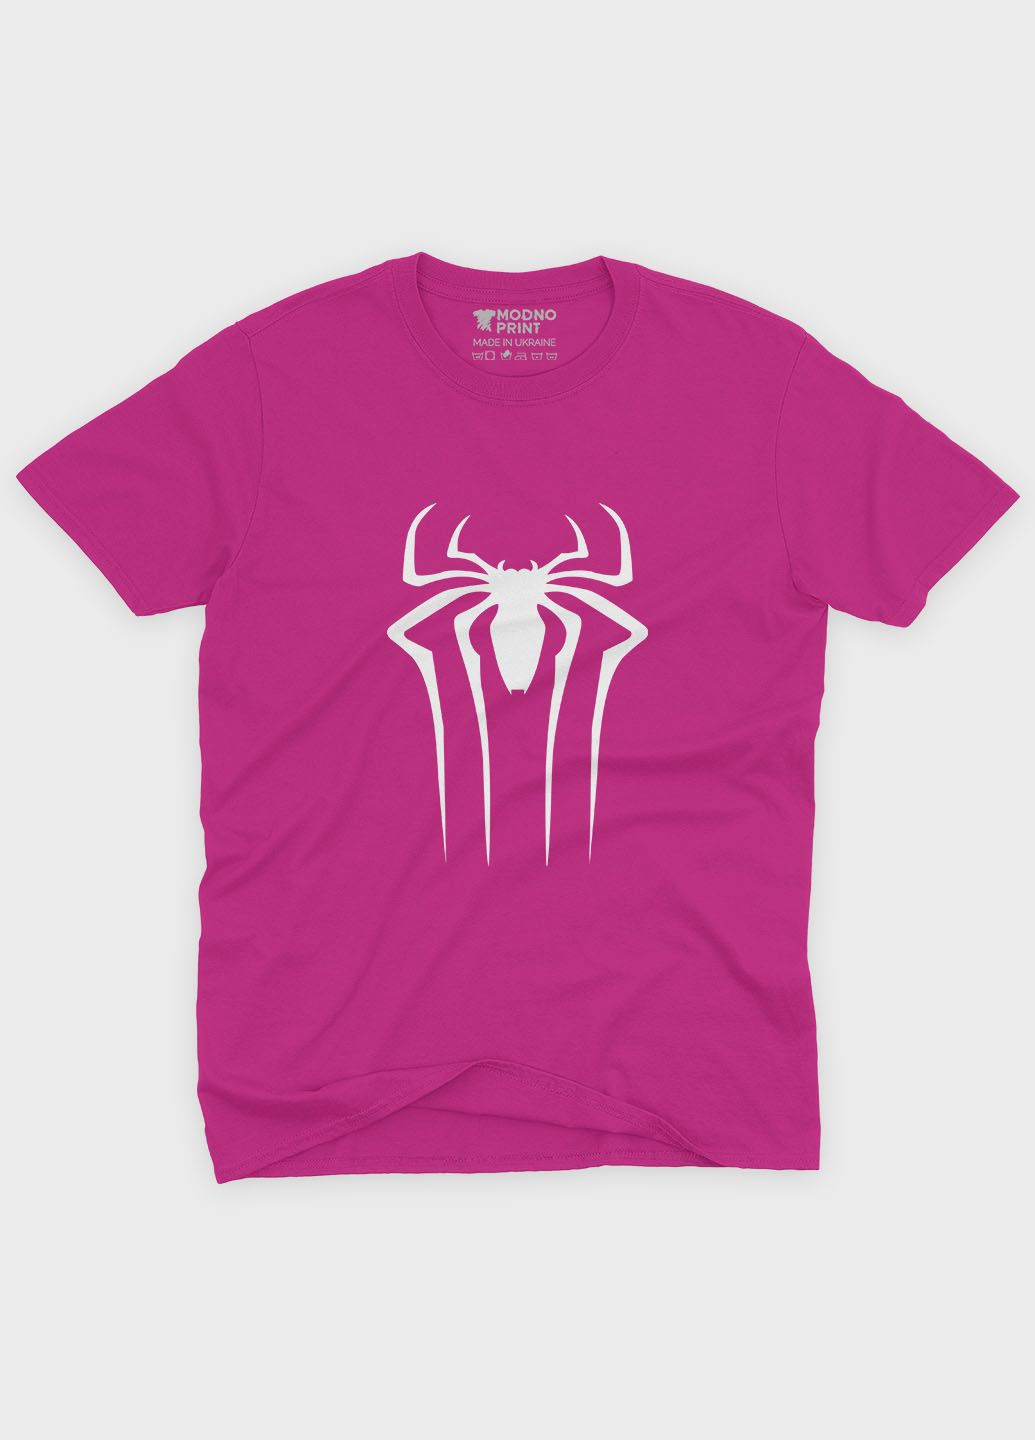 Розовая демисезонная футболка для мальчика с принтом супергероя - человек-паук (ts001-1-fuxj-006-014-107-b) Modno